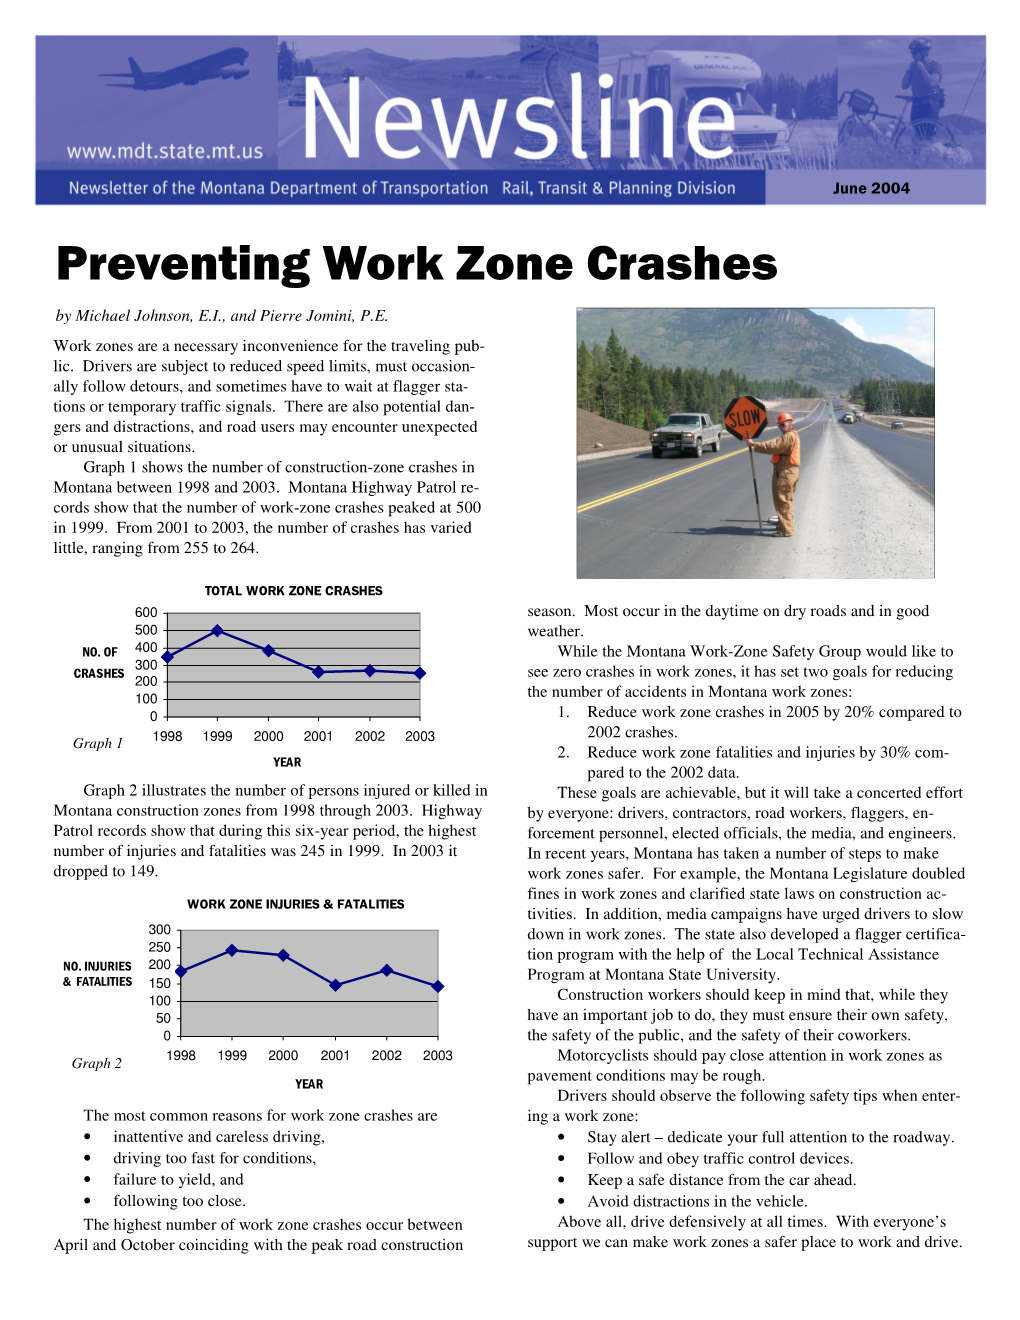 Preventing Work Zone Crashes by Michael Johnson, E.I., and Pierre Jomini, P.E